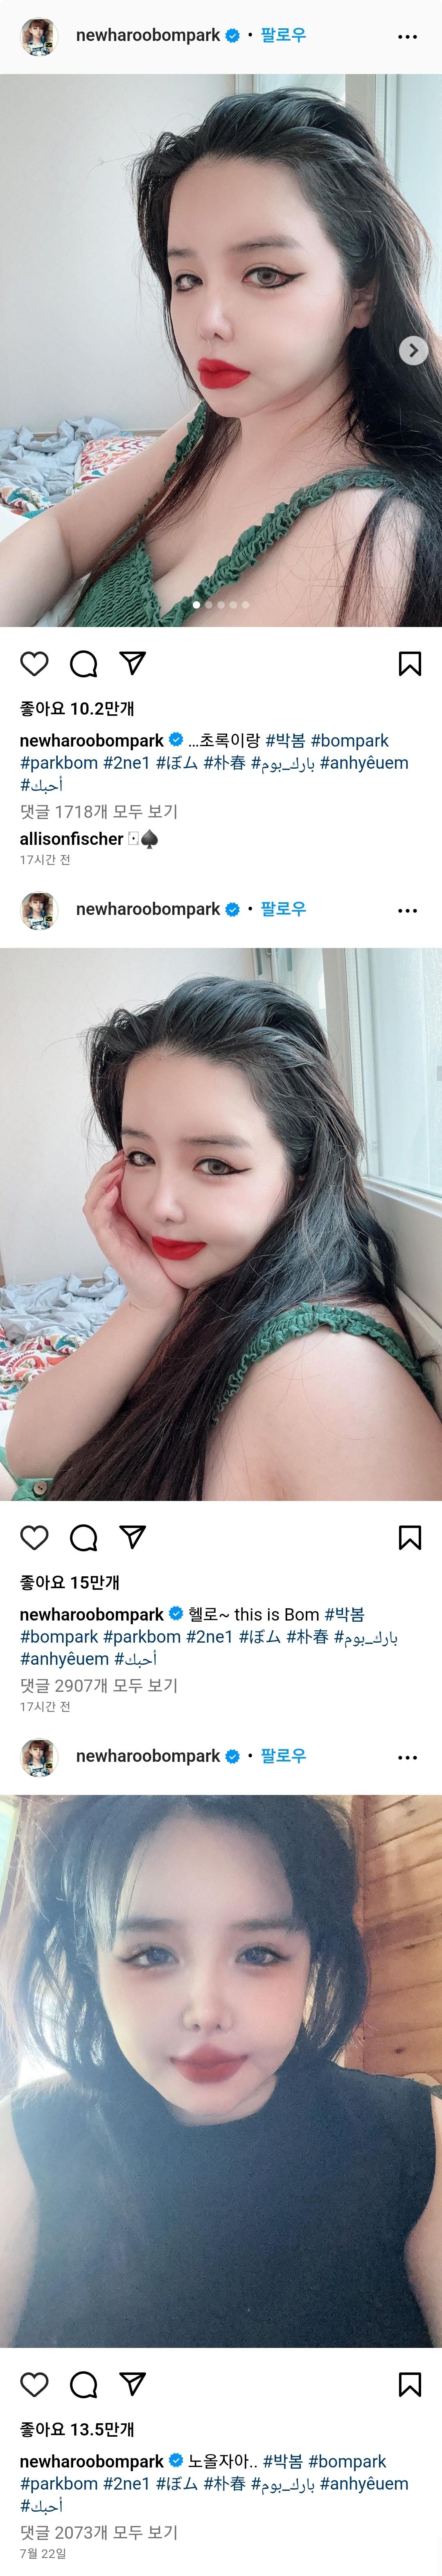 박봄 인스타 근황